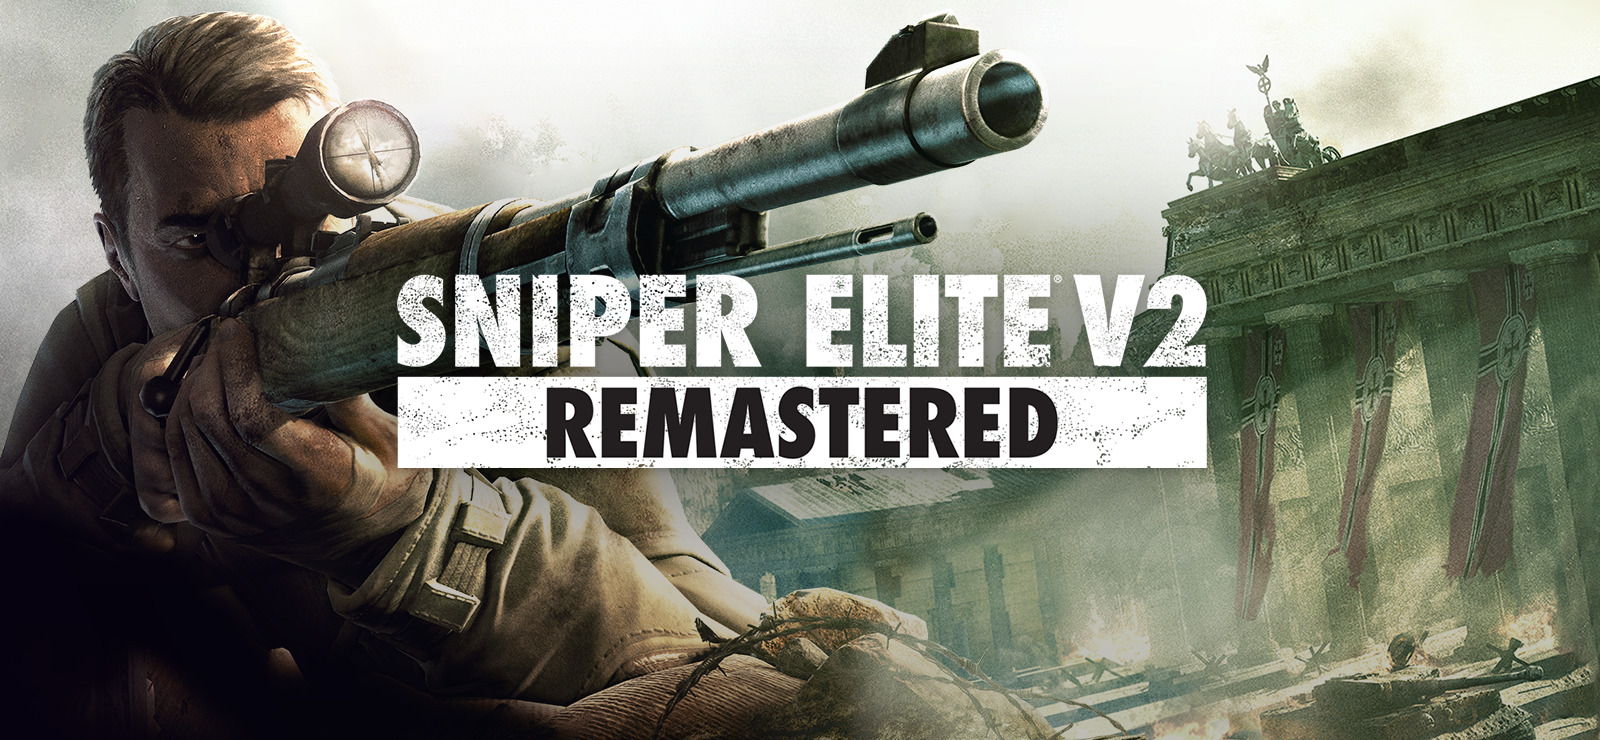 sniper elite v2 esrb rating